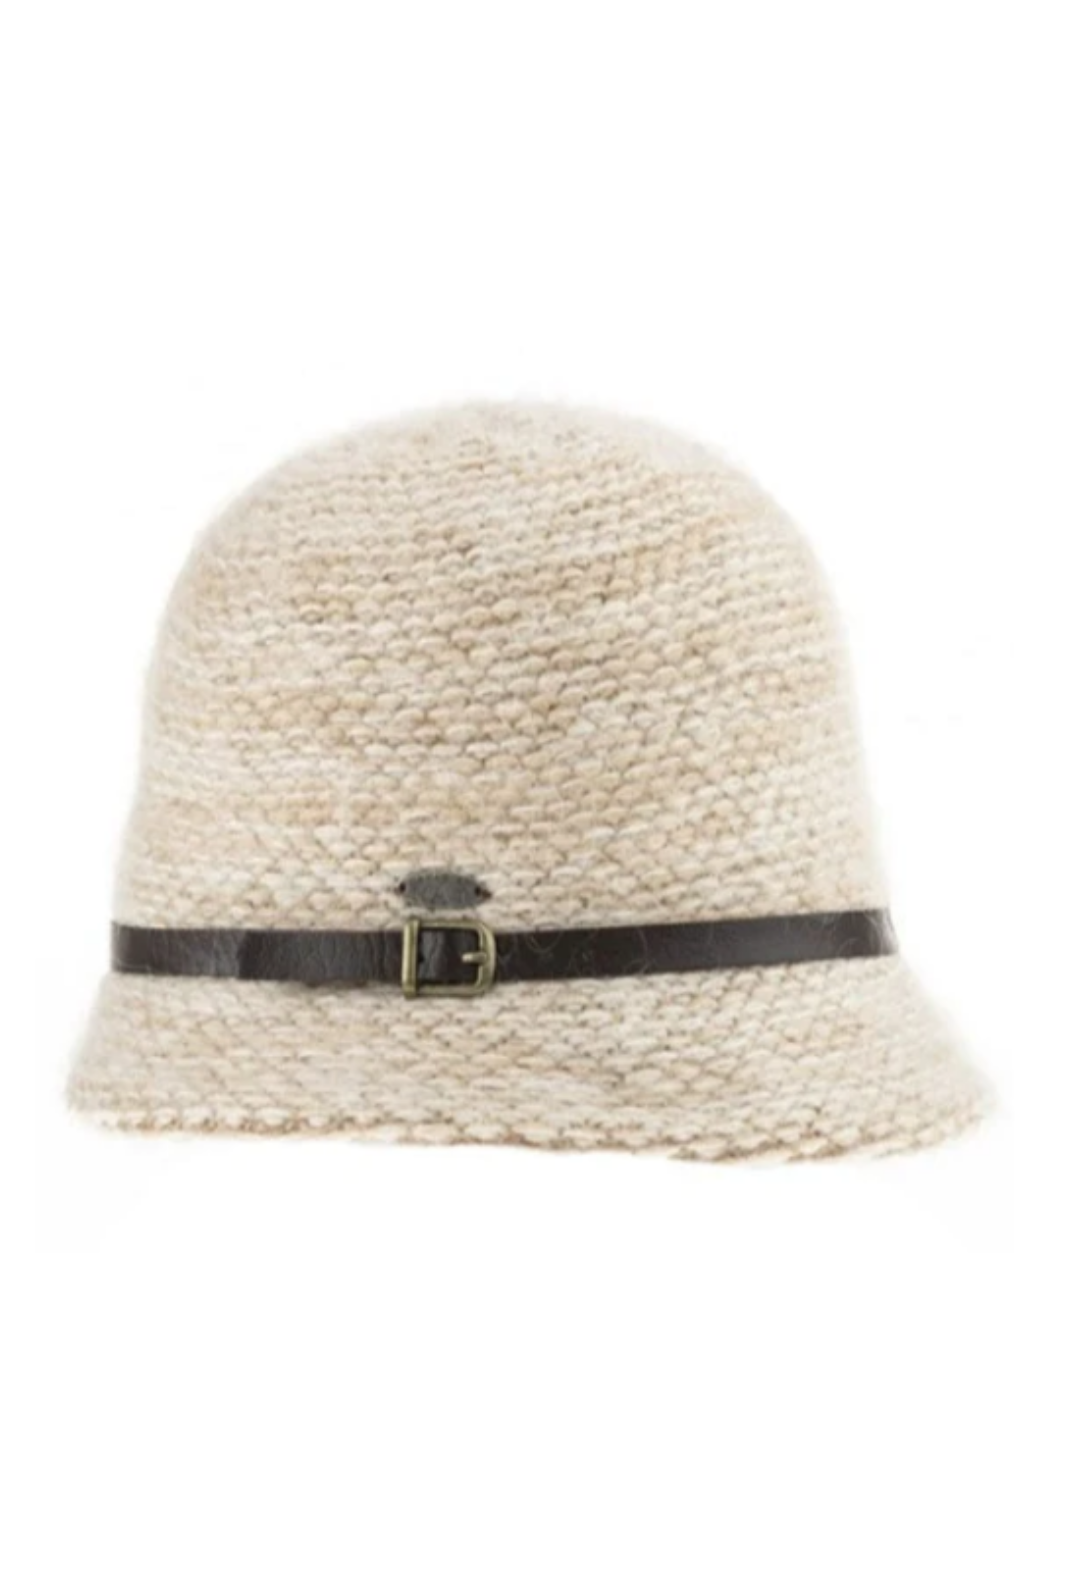 Chapeau Cloche Clotilde de Canadian Hat